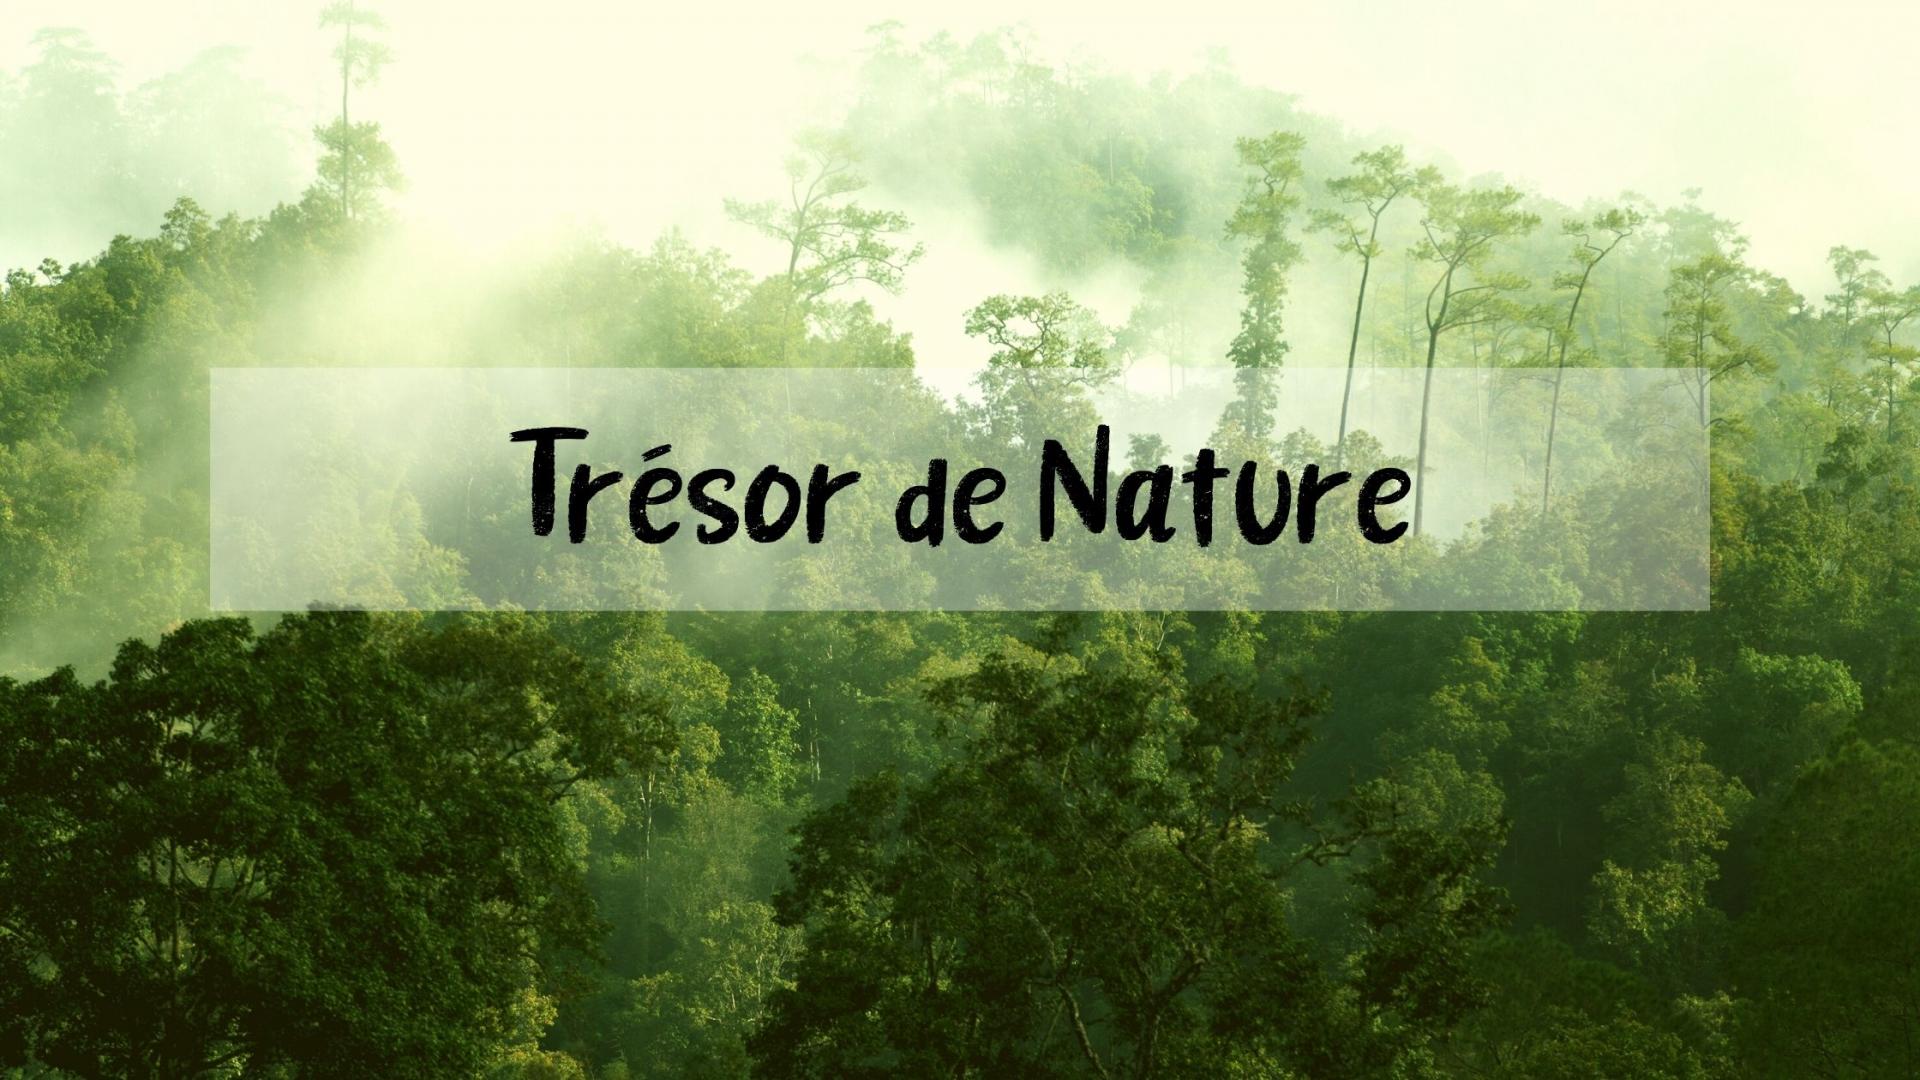 TRESOR DE NATURE